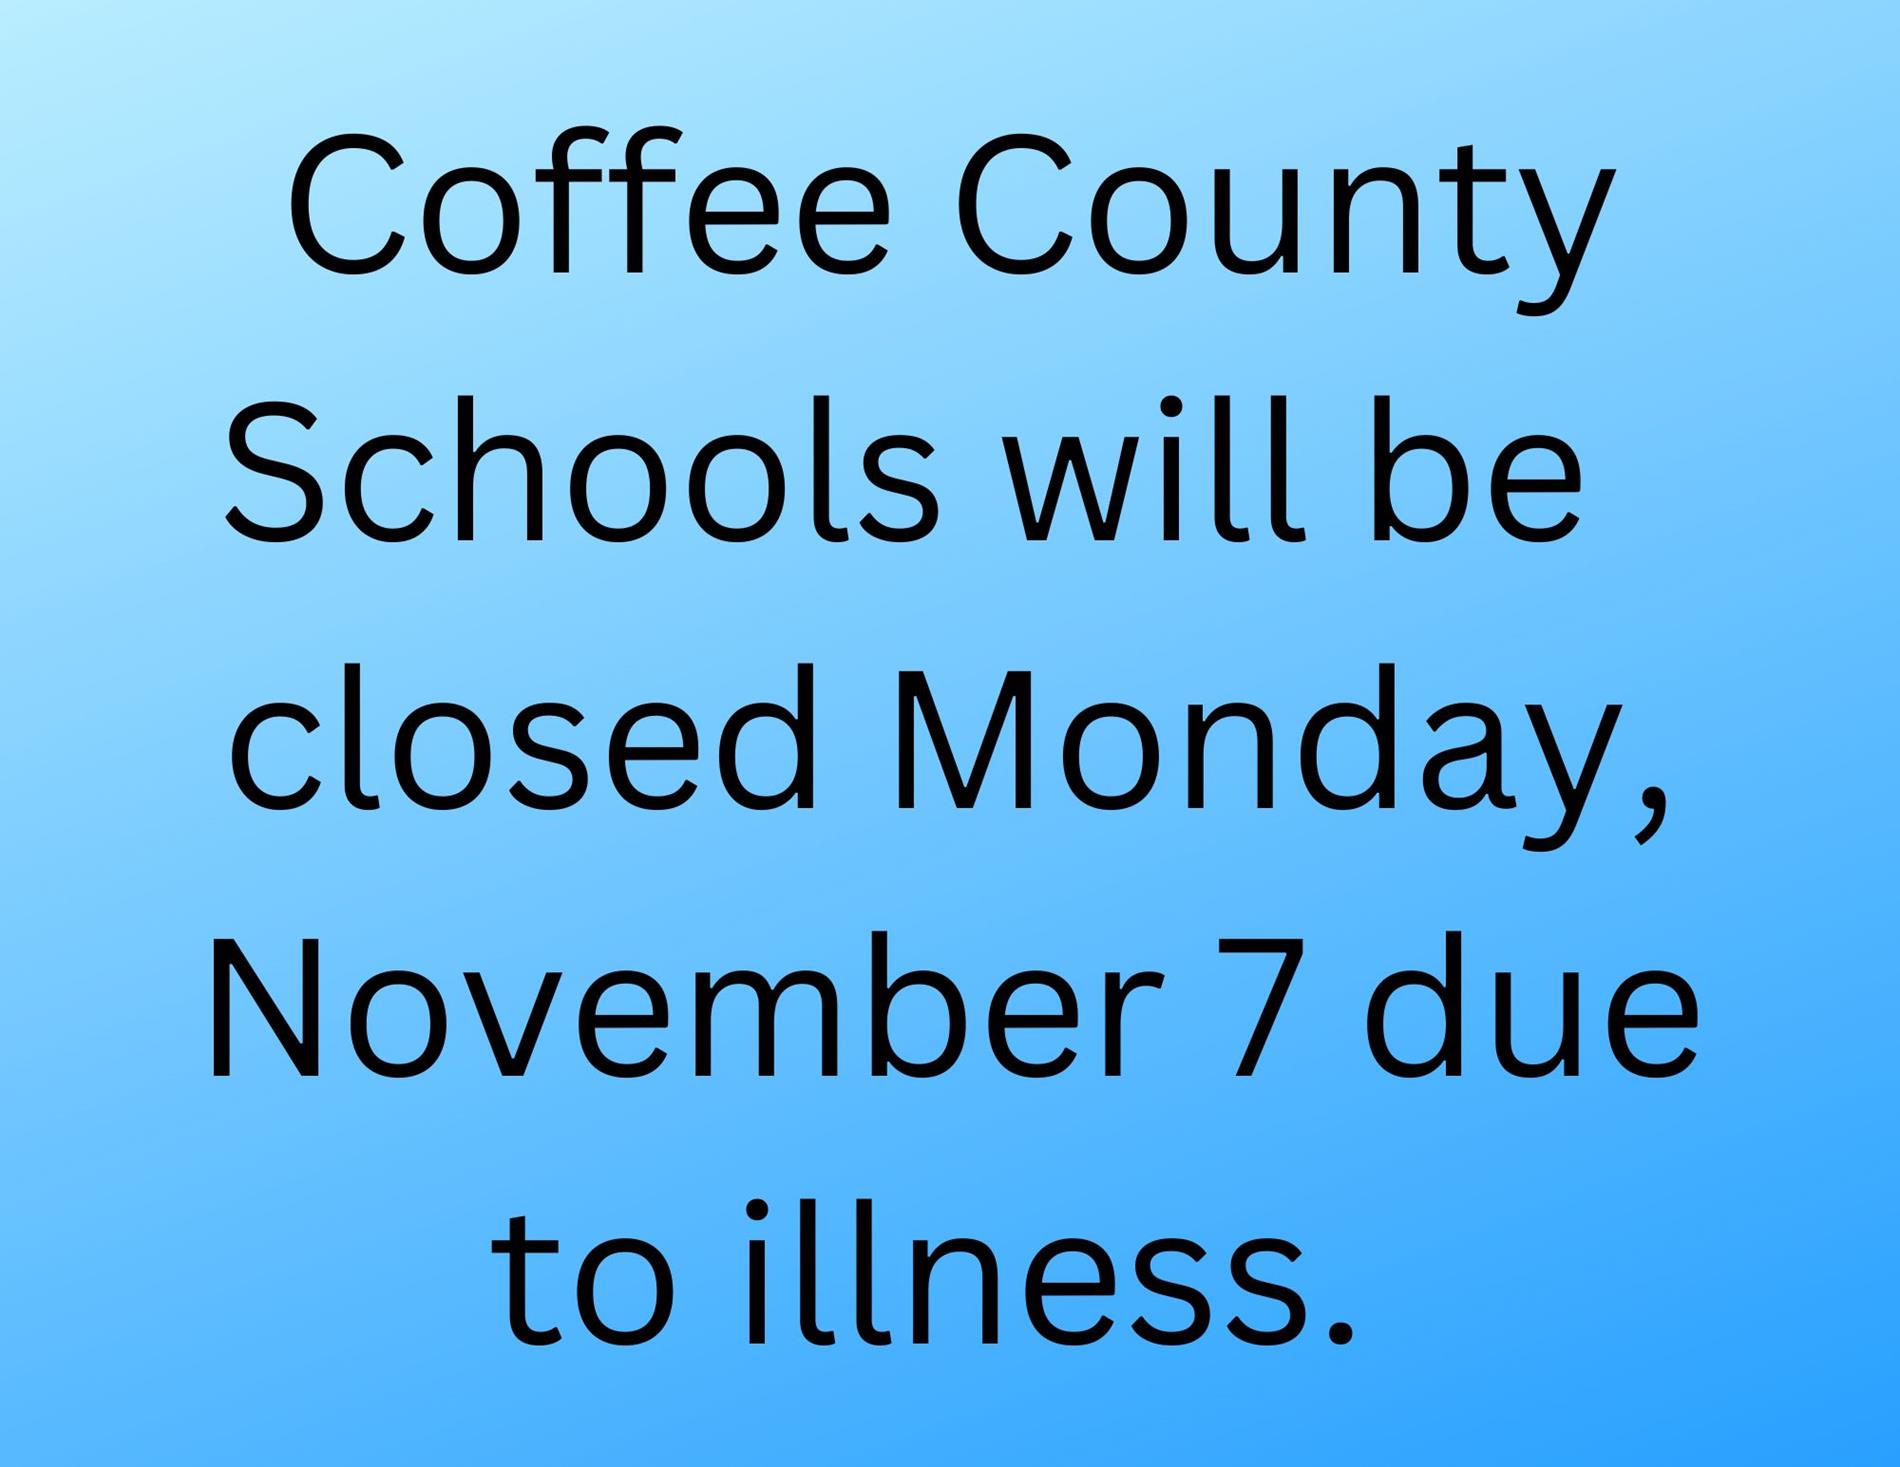 No School Nov. 7 due to illness